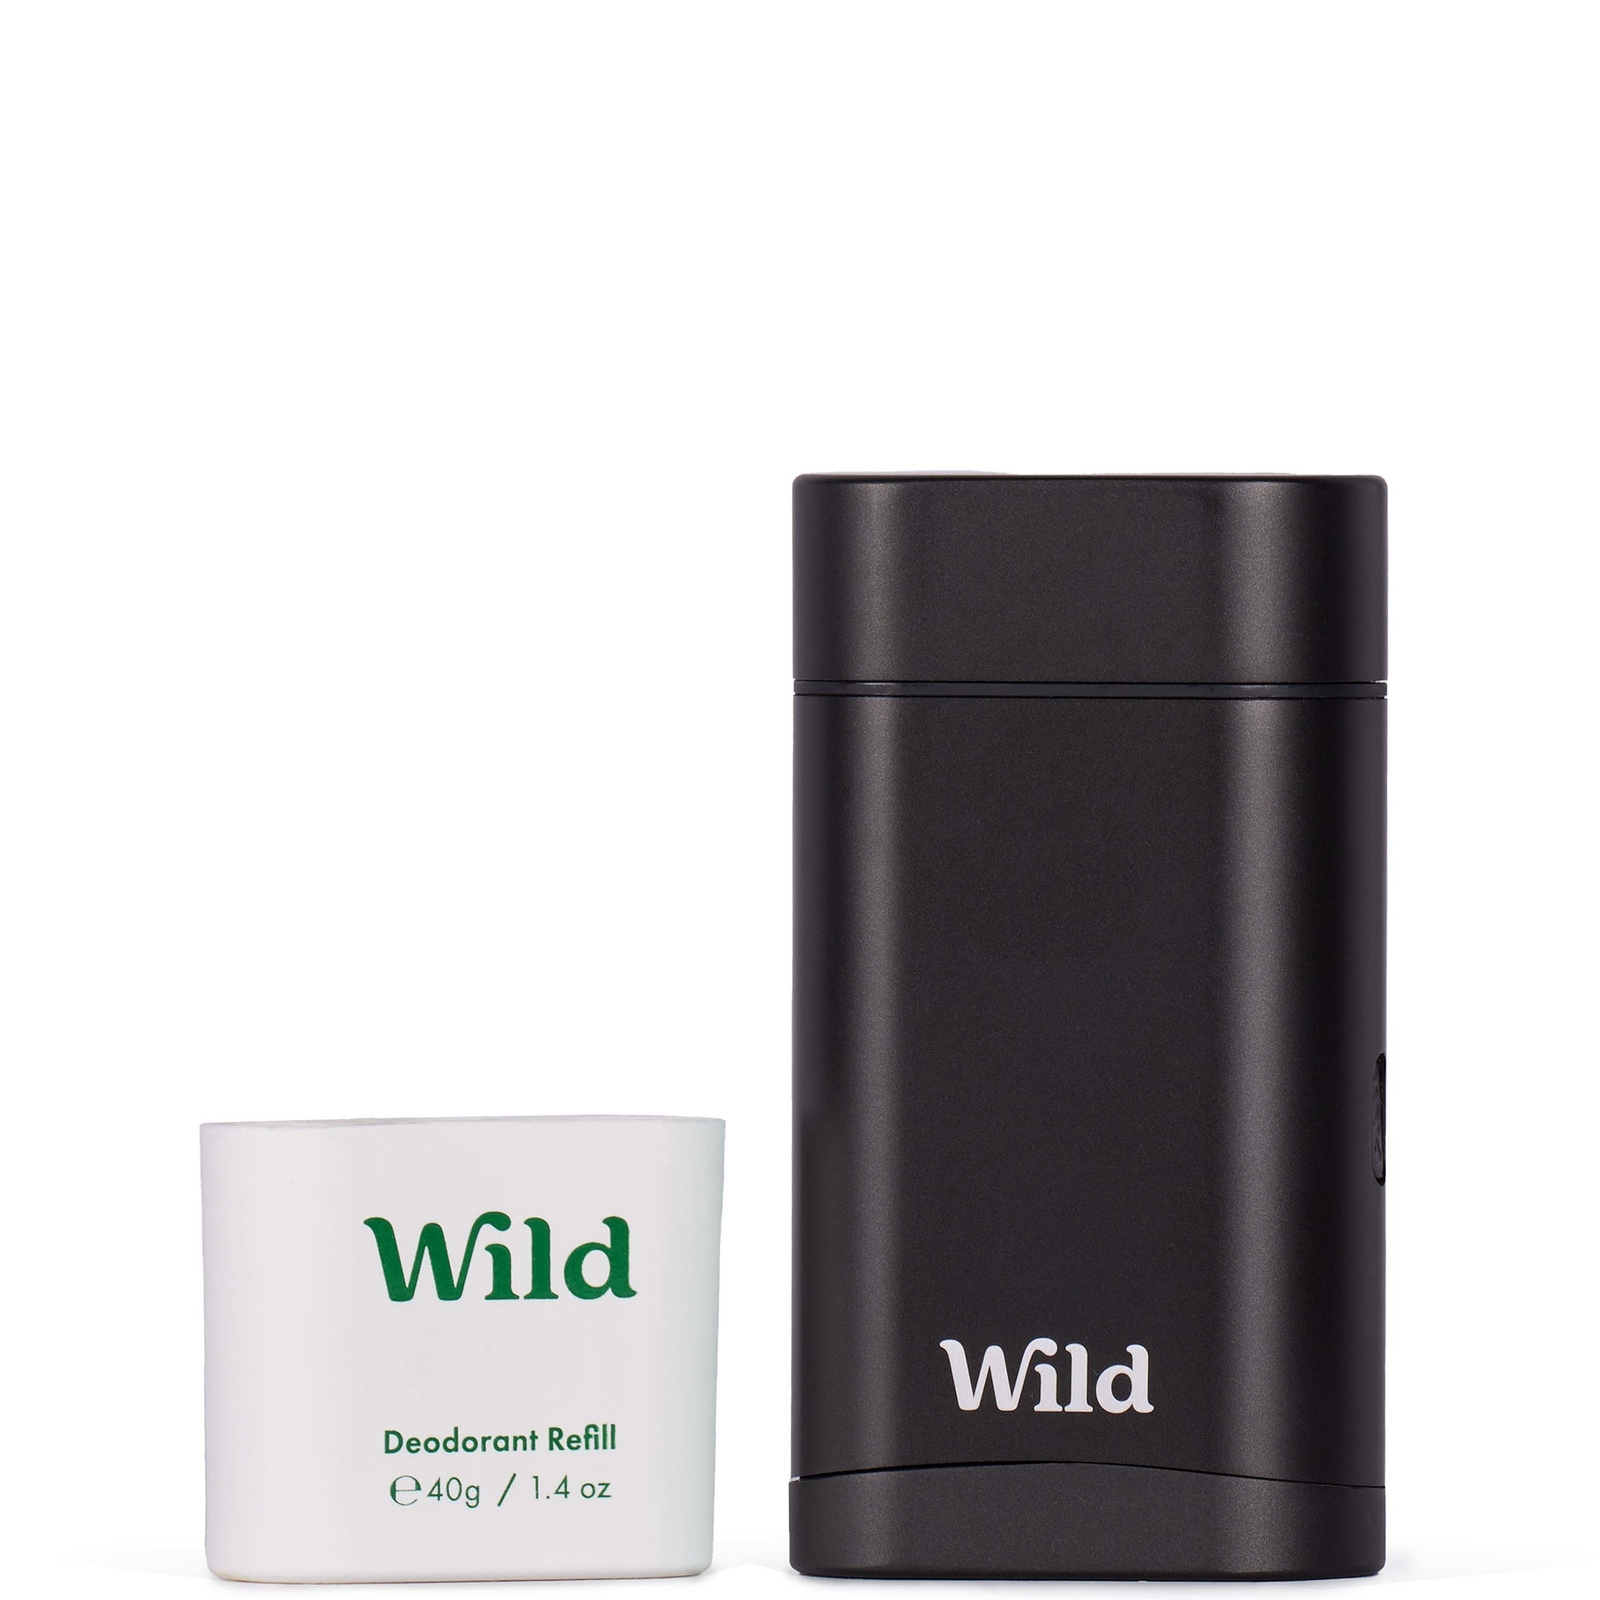 Image of Wild Men's Fresh Cotton and Sea Salt Deodorant in Black Case 40g